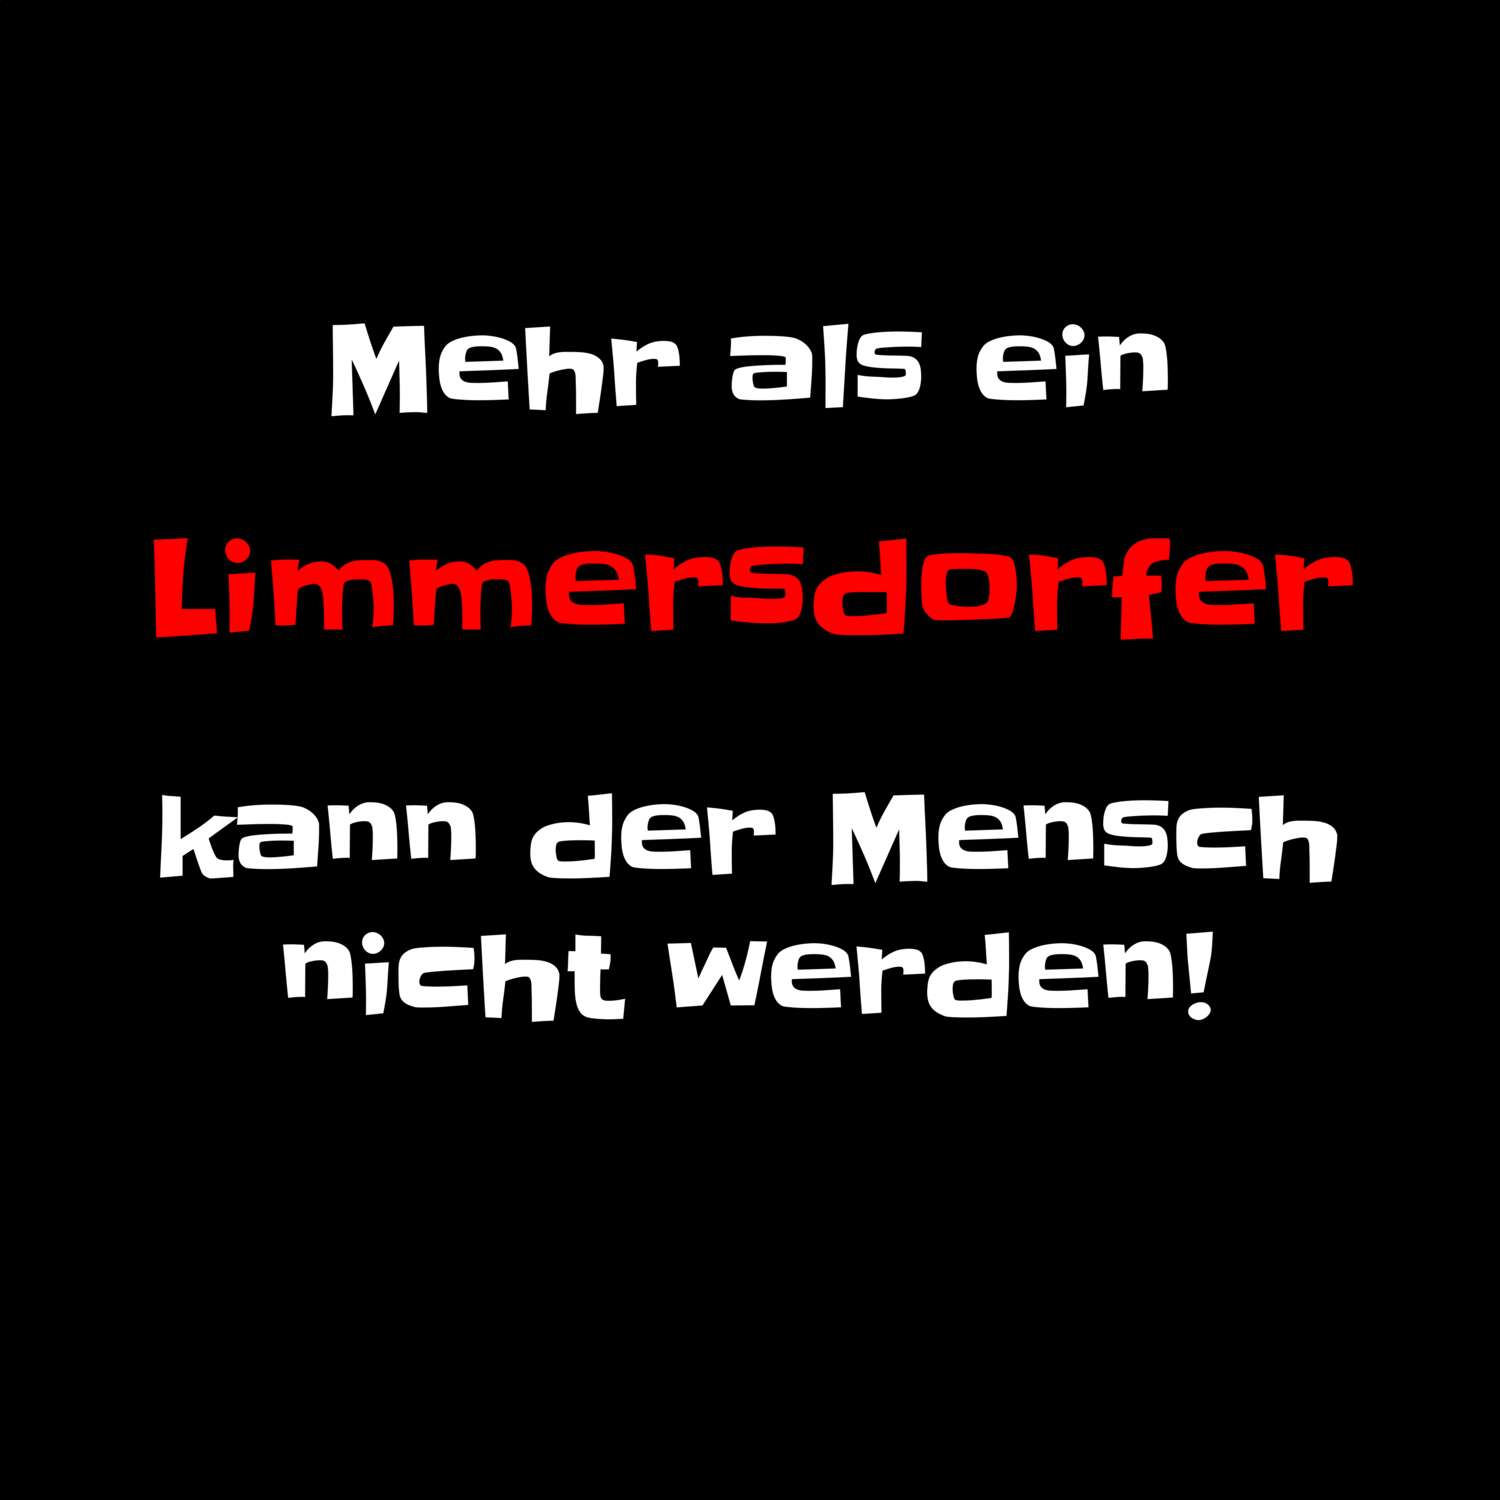 Limmersdorf T-Shirt »Mehr als ein«